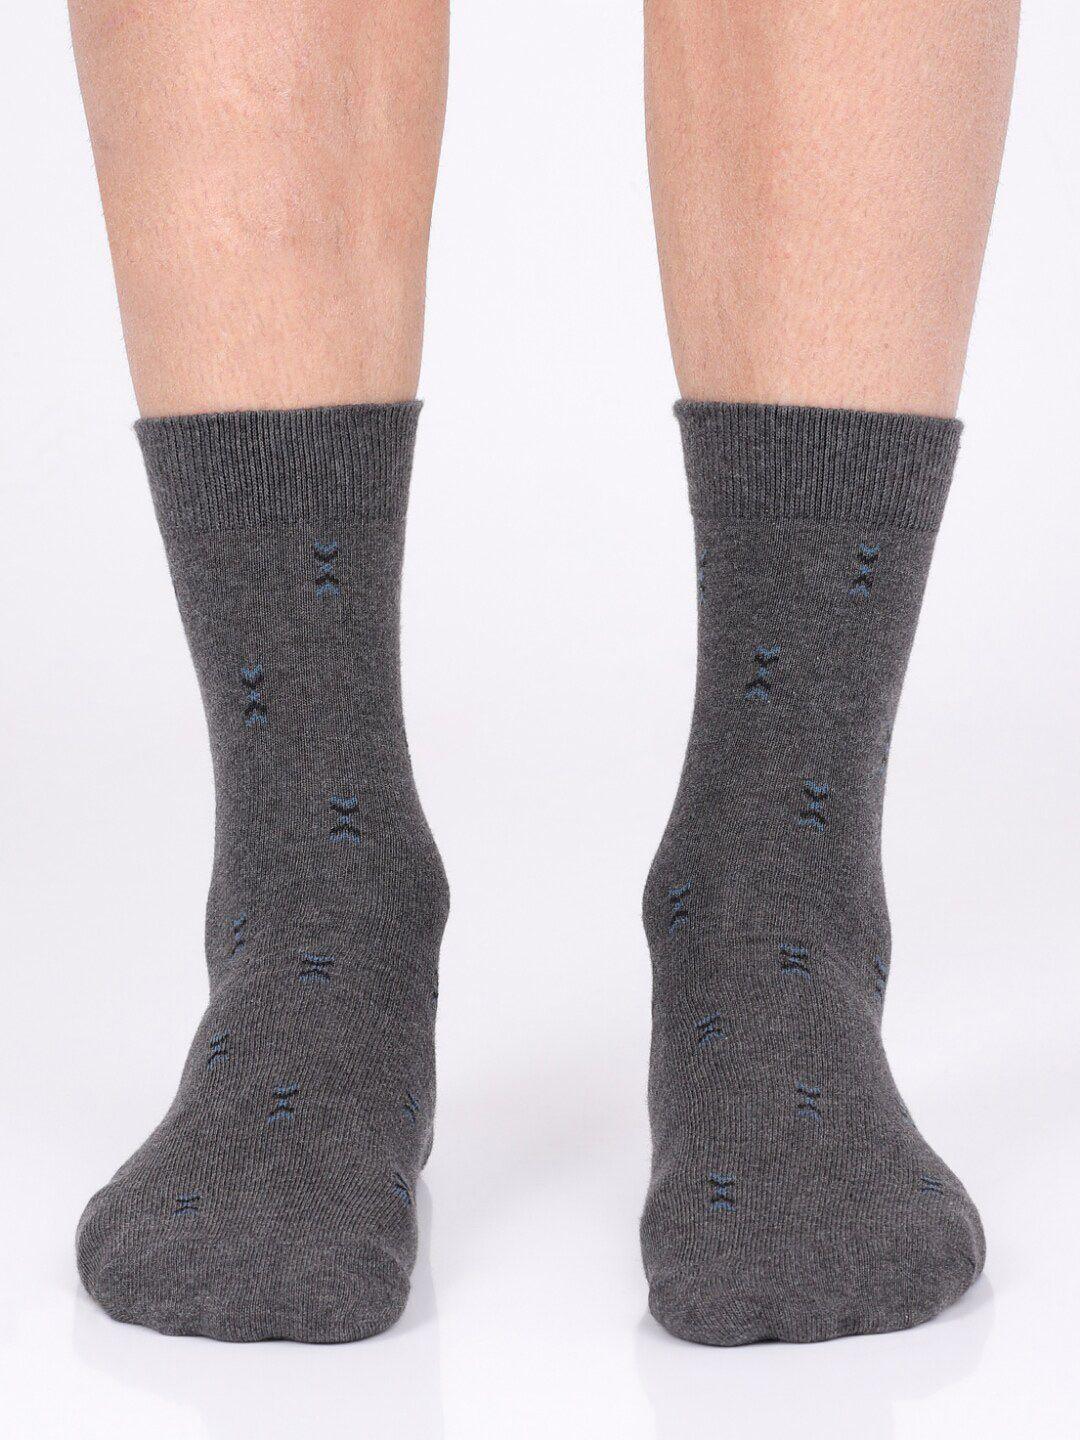 jockey-men-pack-of-3-charcoal-printed-calf-length-socks